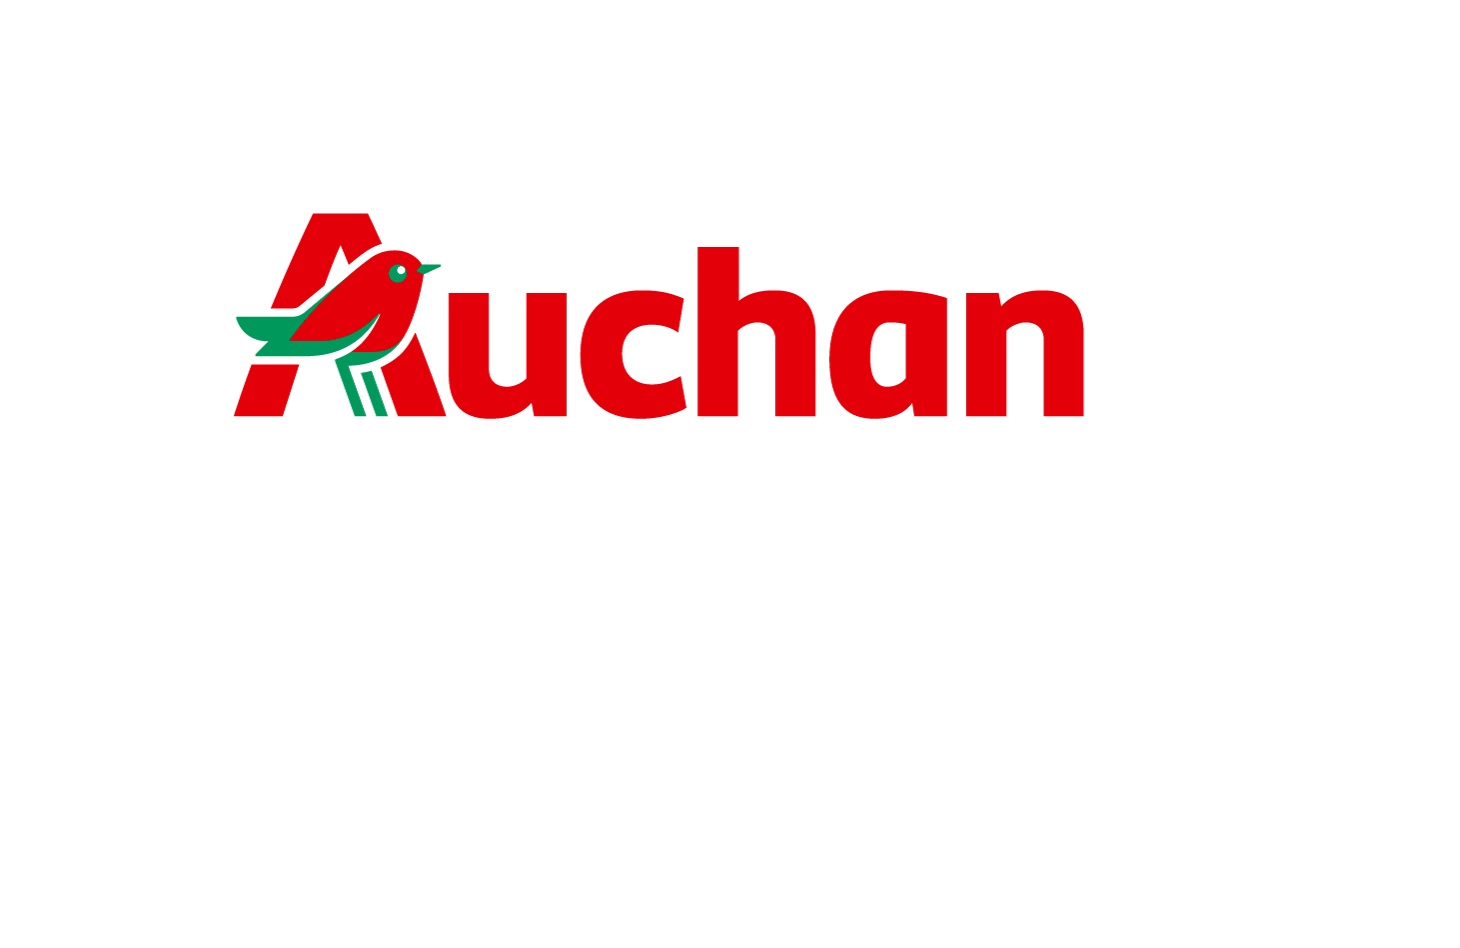 Auchan Retail Polska wdraża innowacyjną ścieżkę zakupową Scan&Go